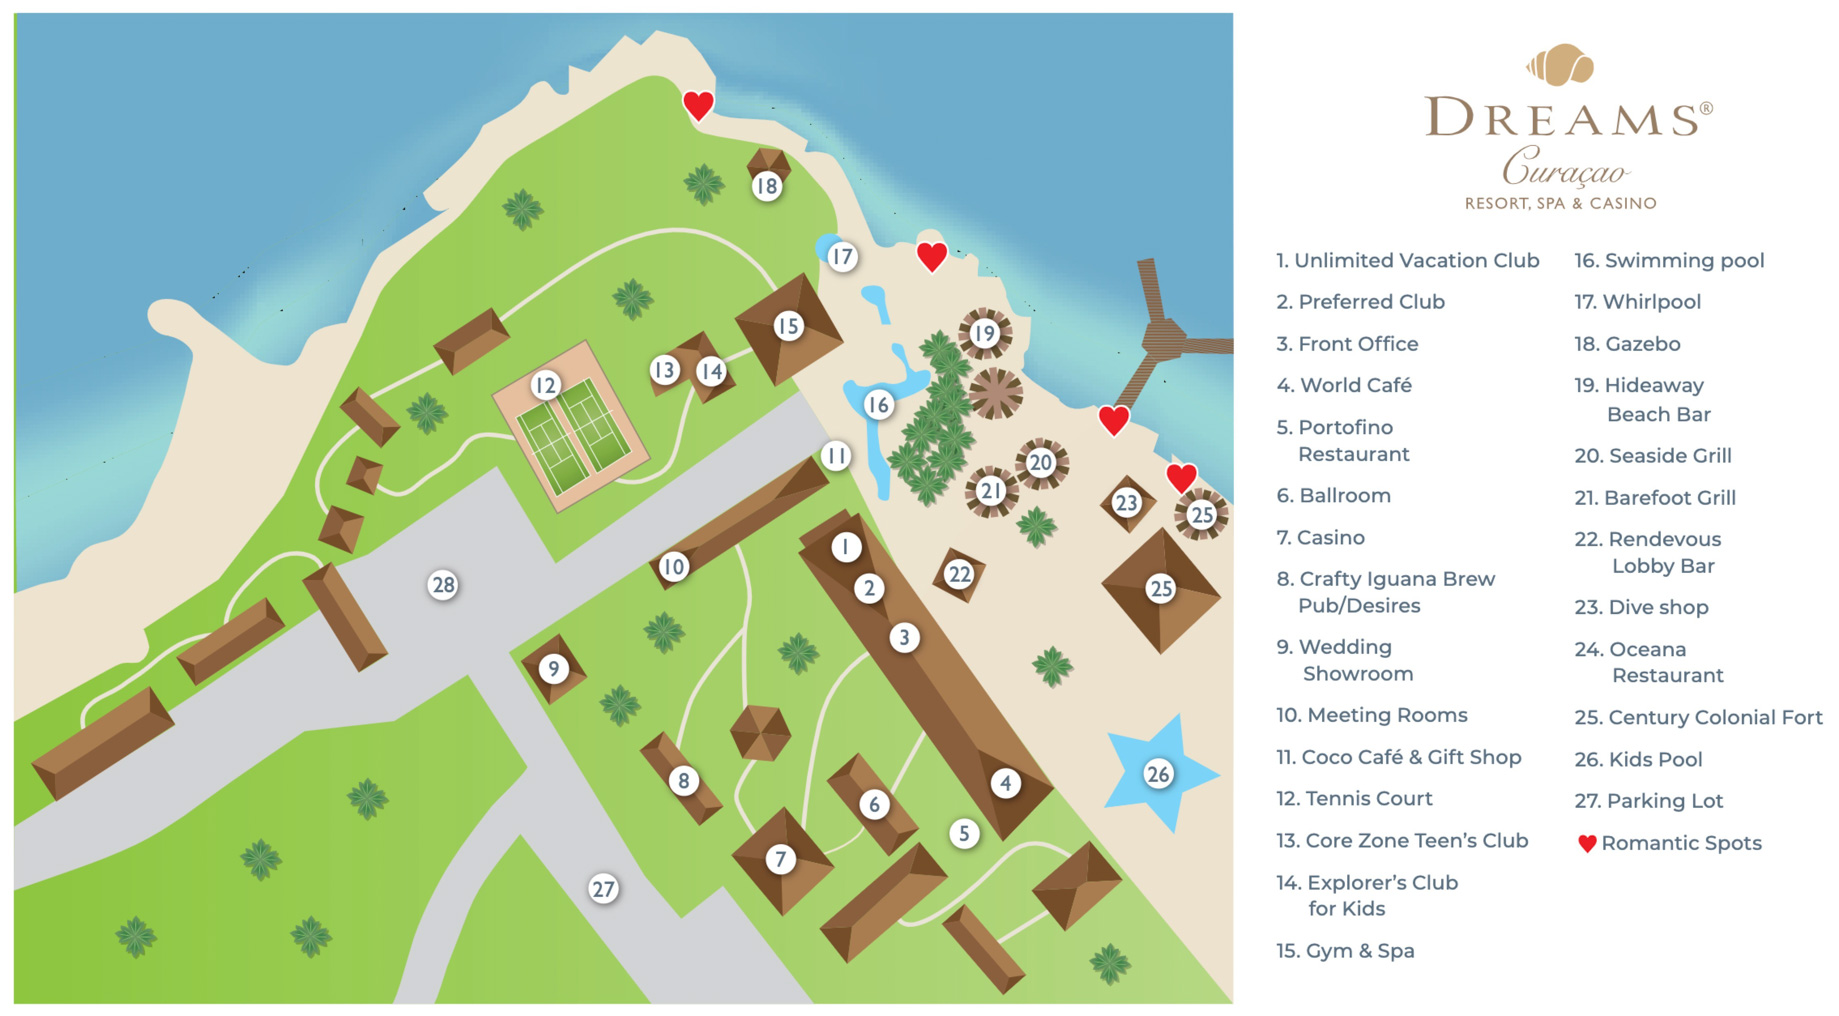 Dreams Curaçao Resort, Spa & Casino - Willemstad, Curaçao - Resort Map